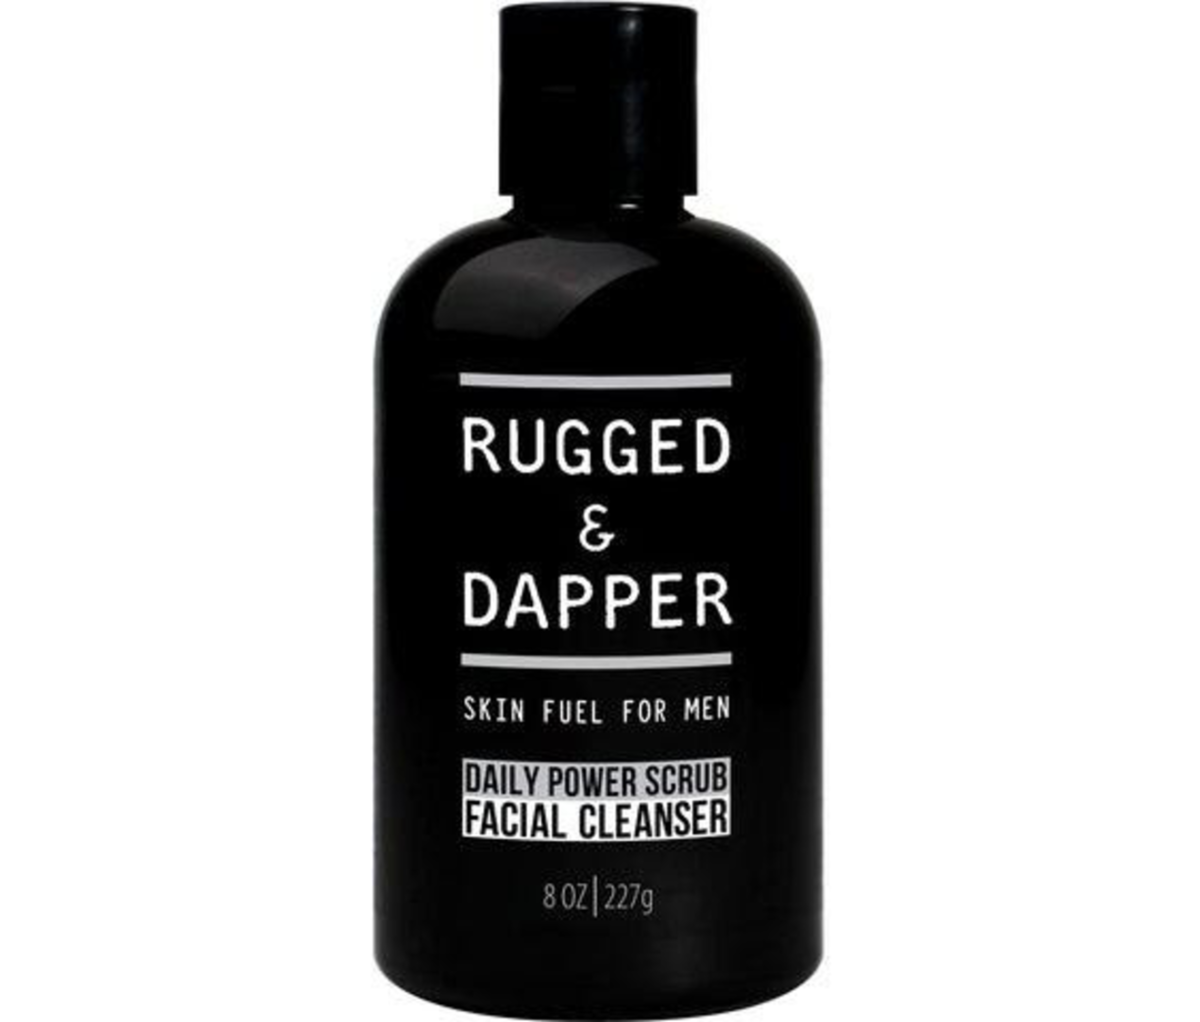 Rugged & Dapper Daily Power Scrub Men's Facial Cleanser